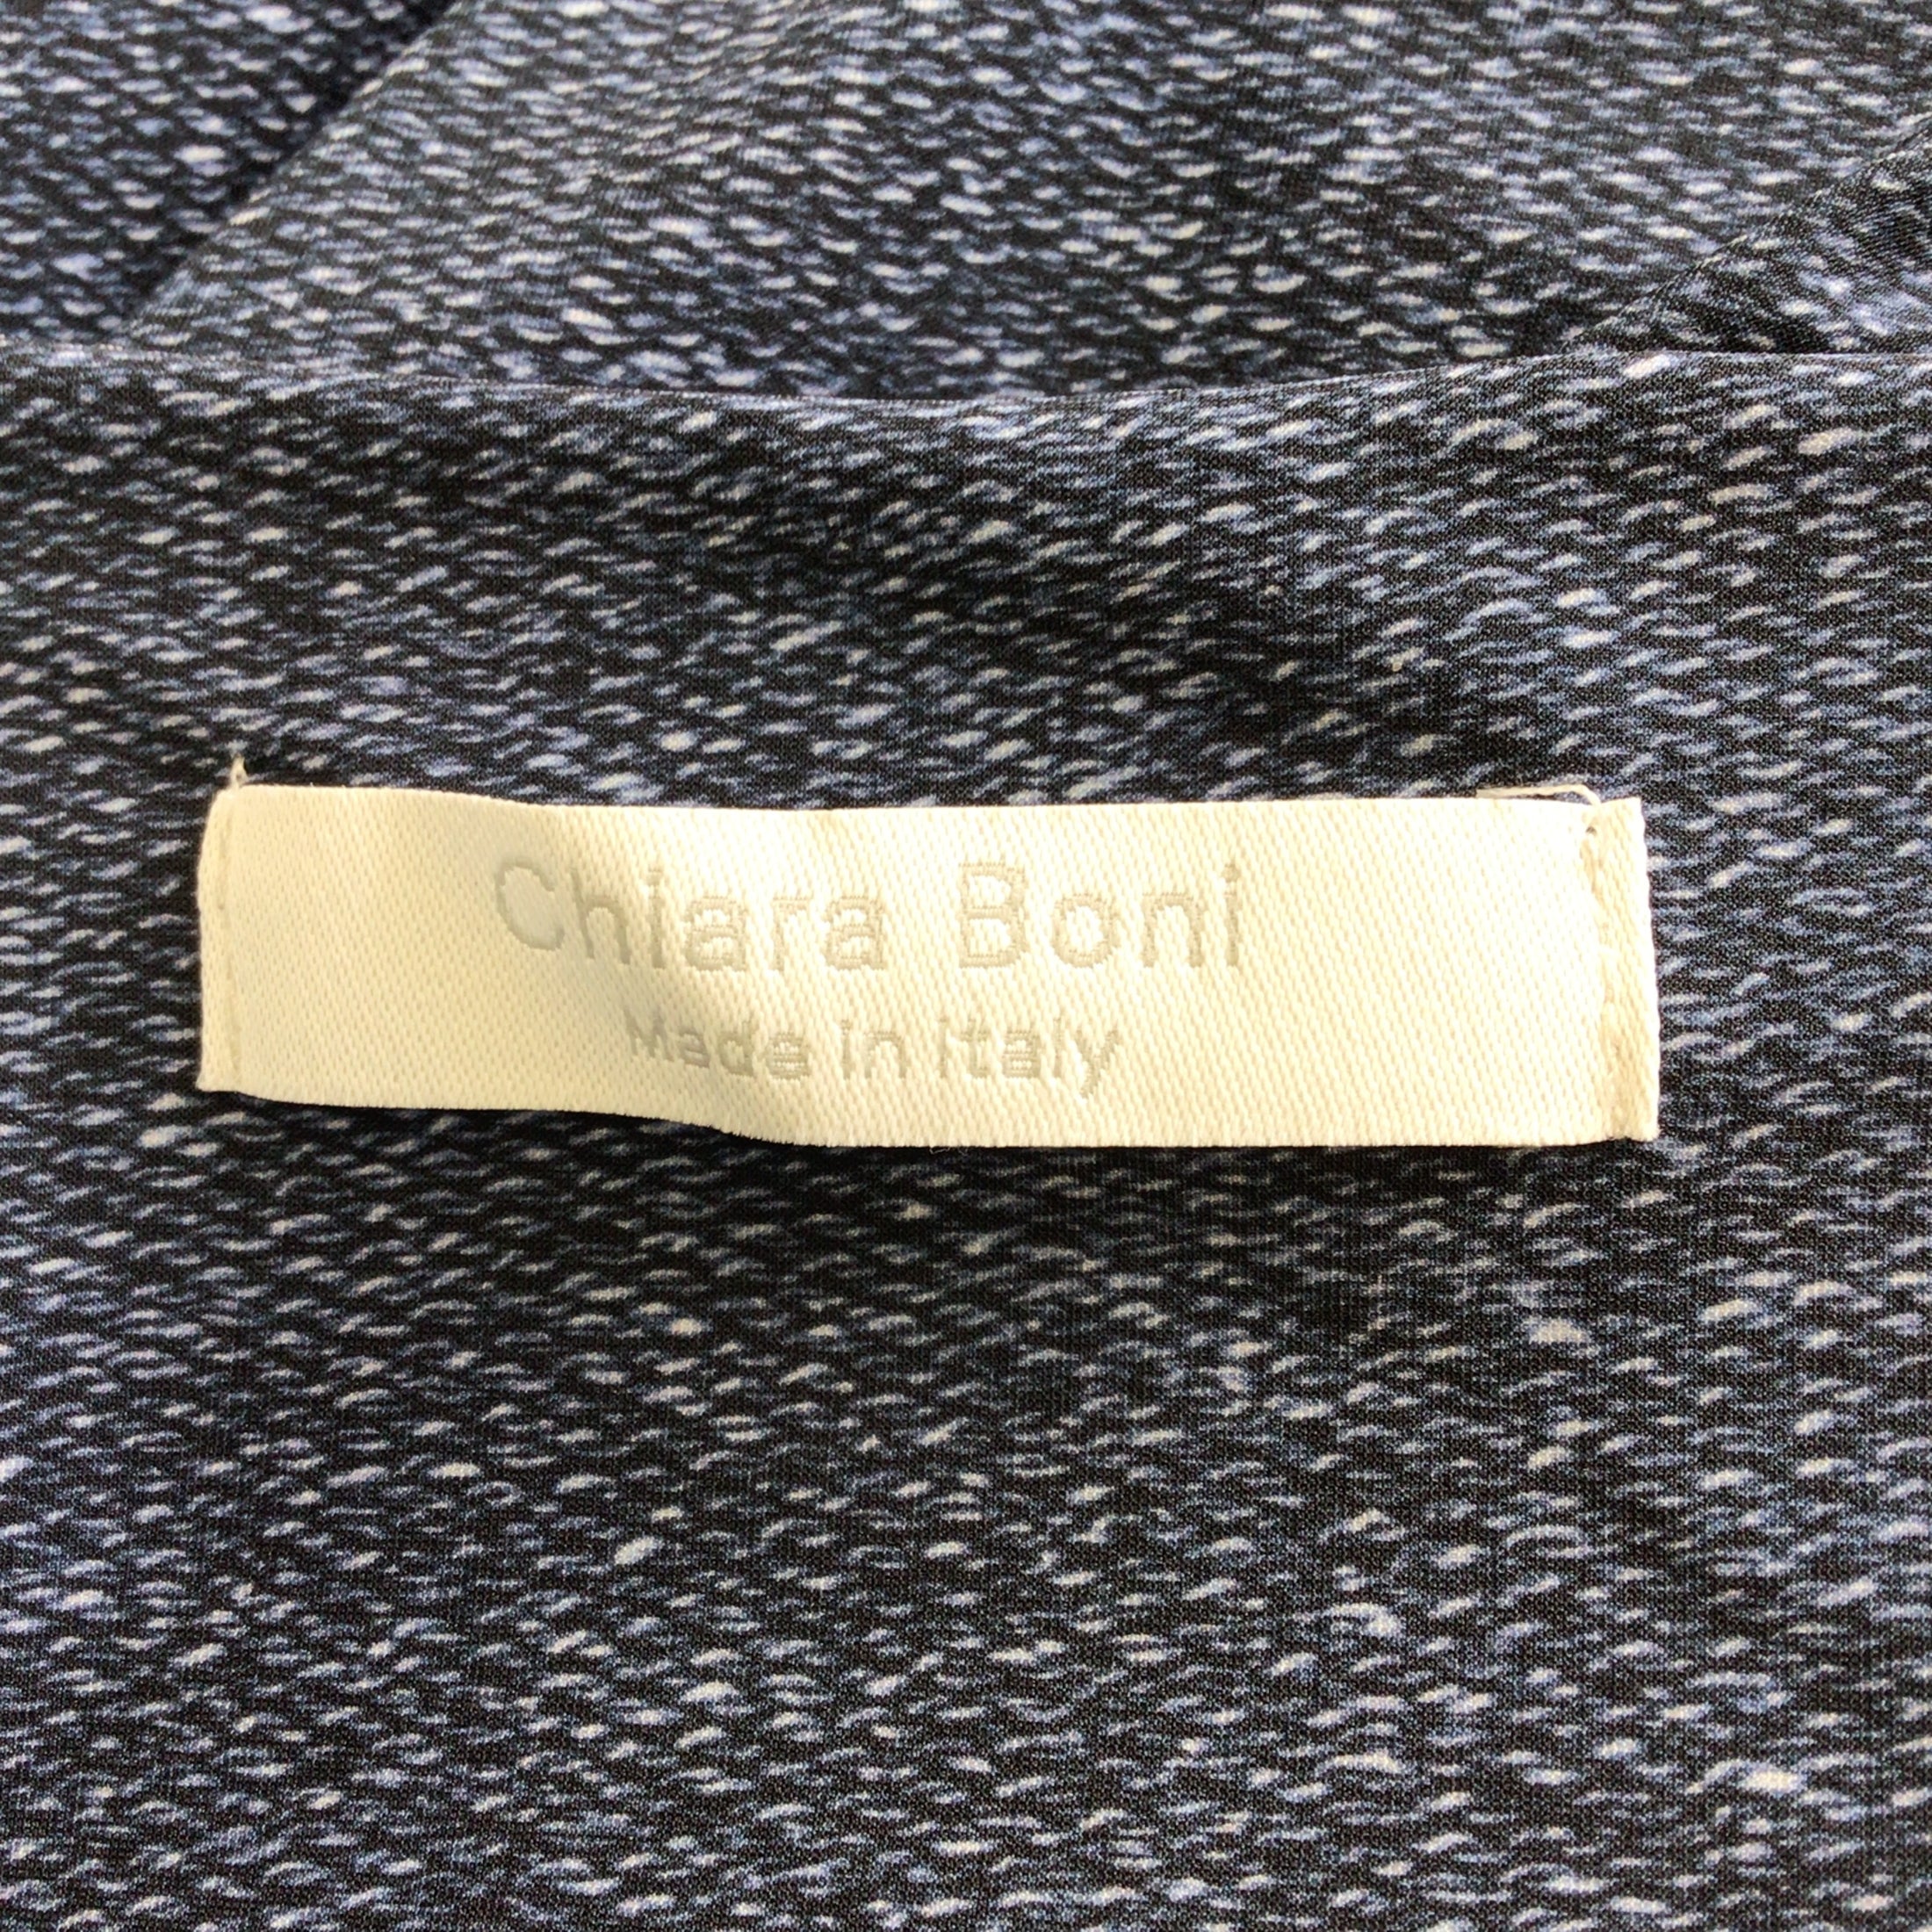 Chiara Boni Blue Multi Francesca Print Ruched Nylon Dress